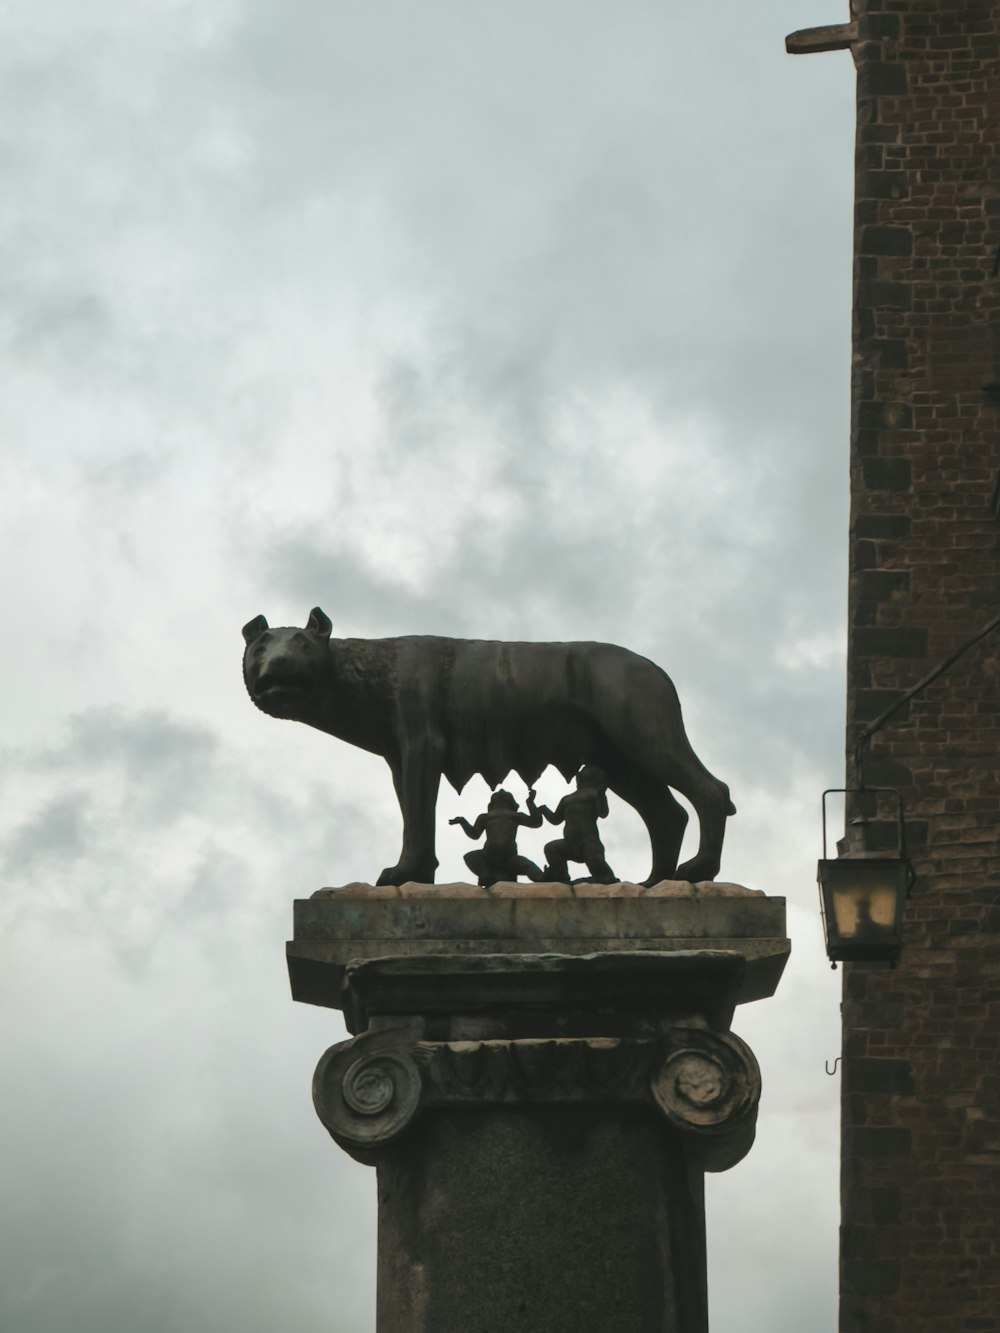 a statue of a bear on top of a pillar